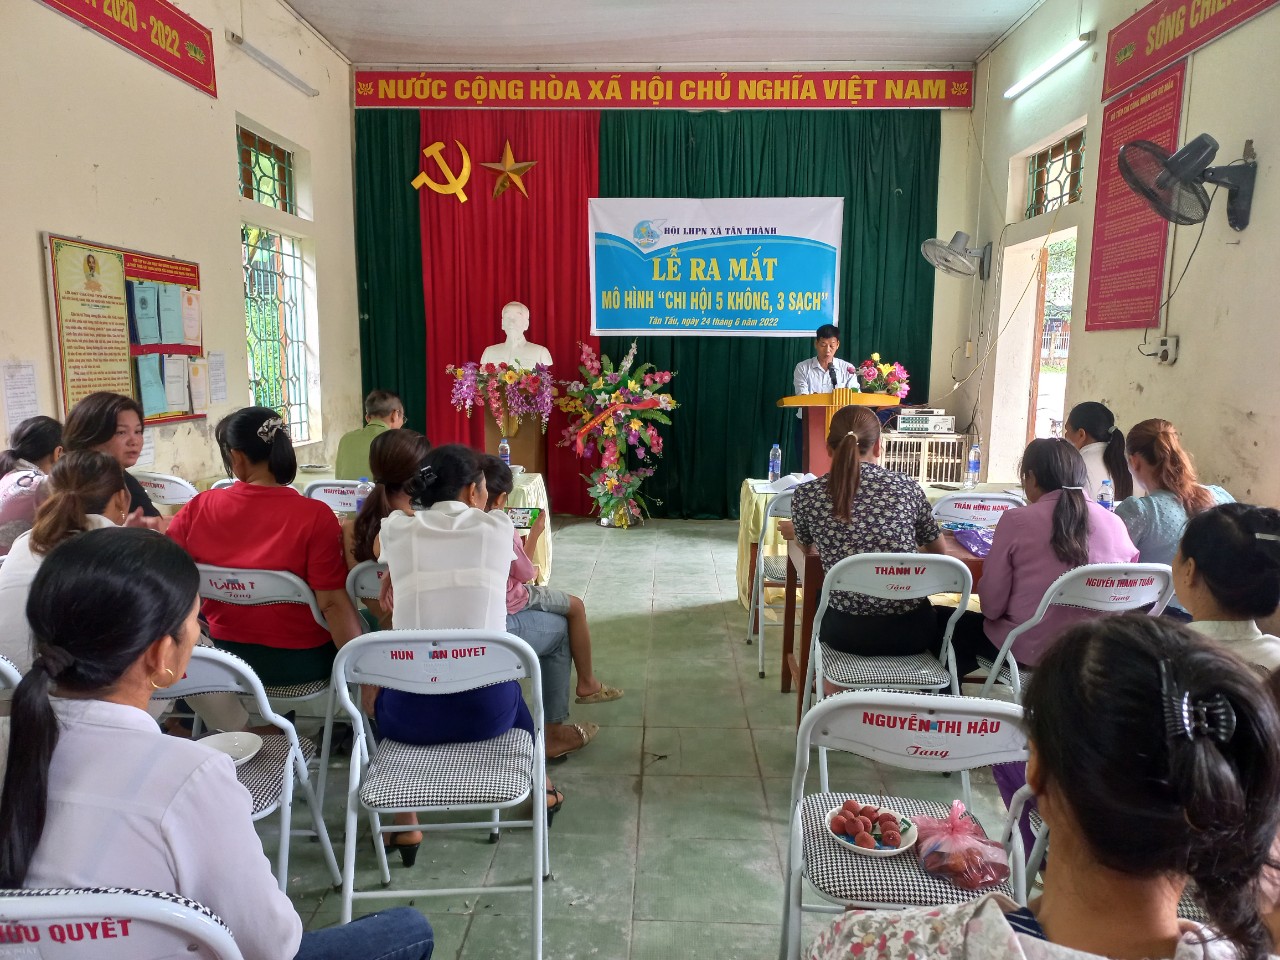 Ra mắt mô hình “Chi hội 5 không, 3 sạch xây dựng nông thôn mới” tại Chi hội thôn Tân Tấu - xã Tân Thành